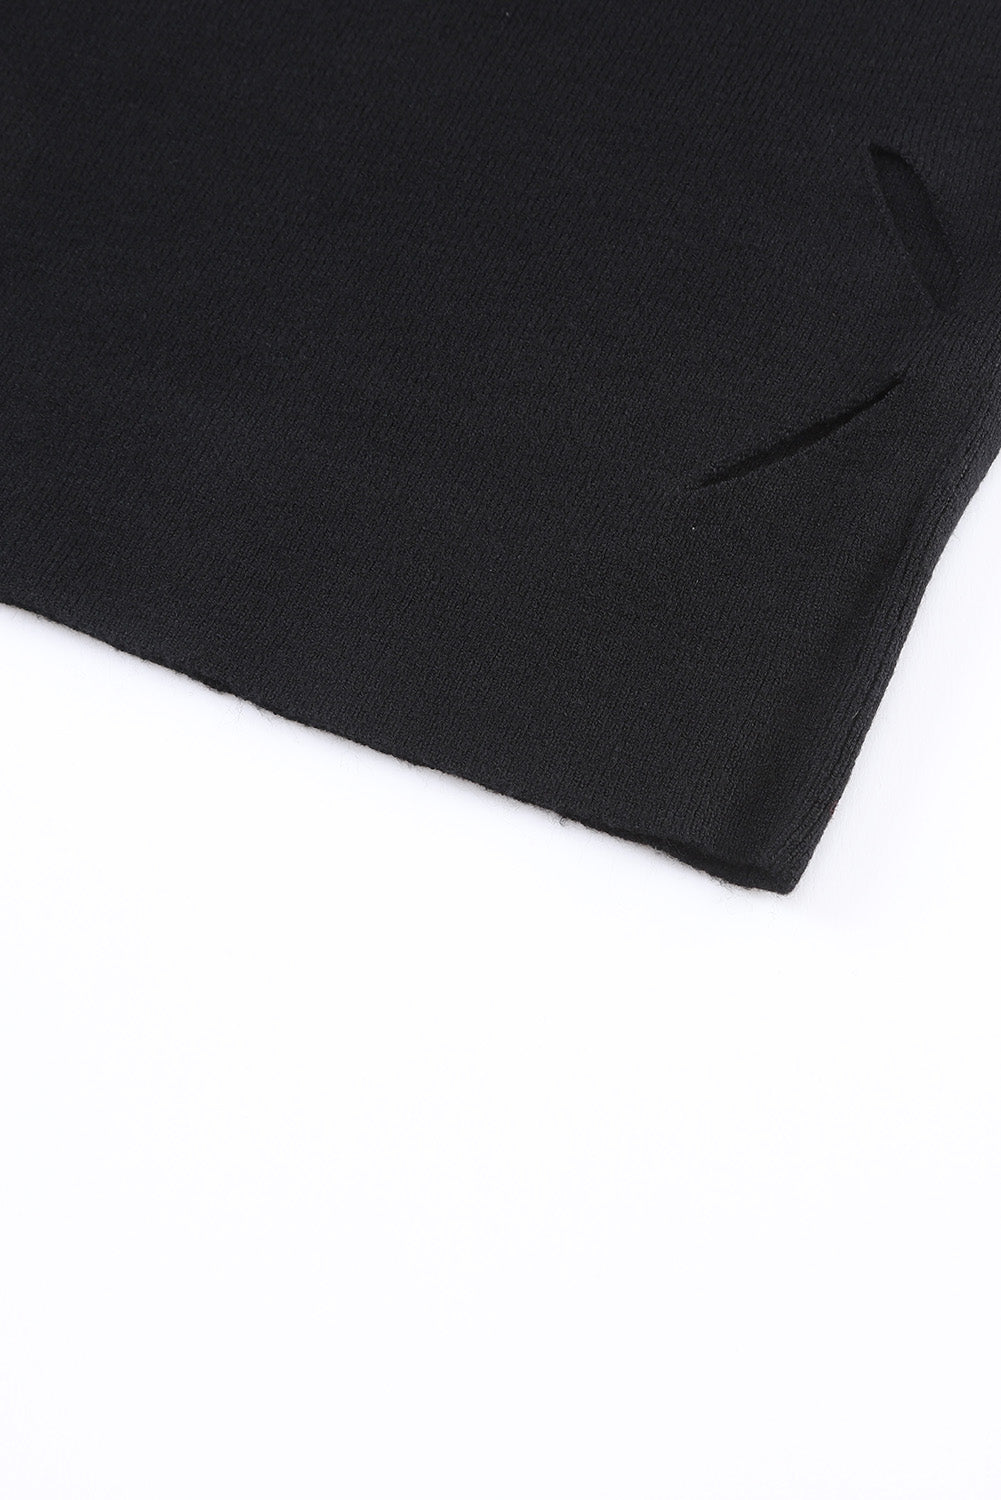 Crna izrezana džemper haljina s dugim rukavima